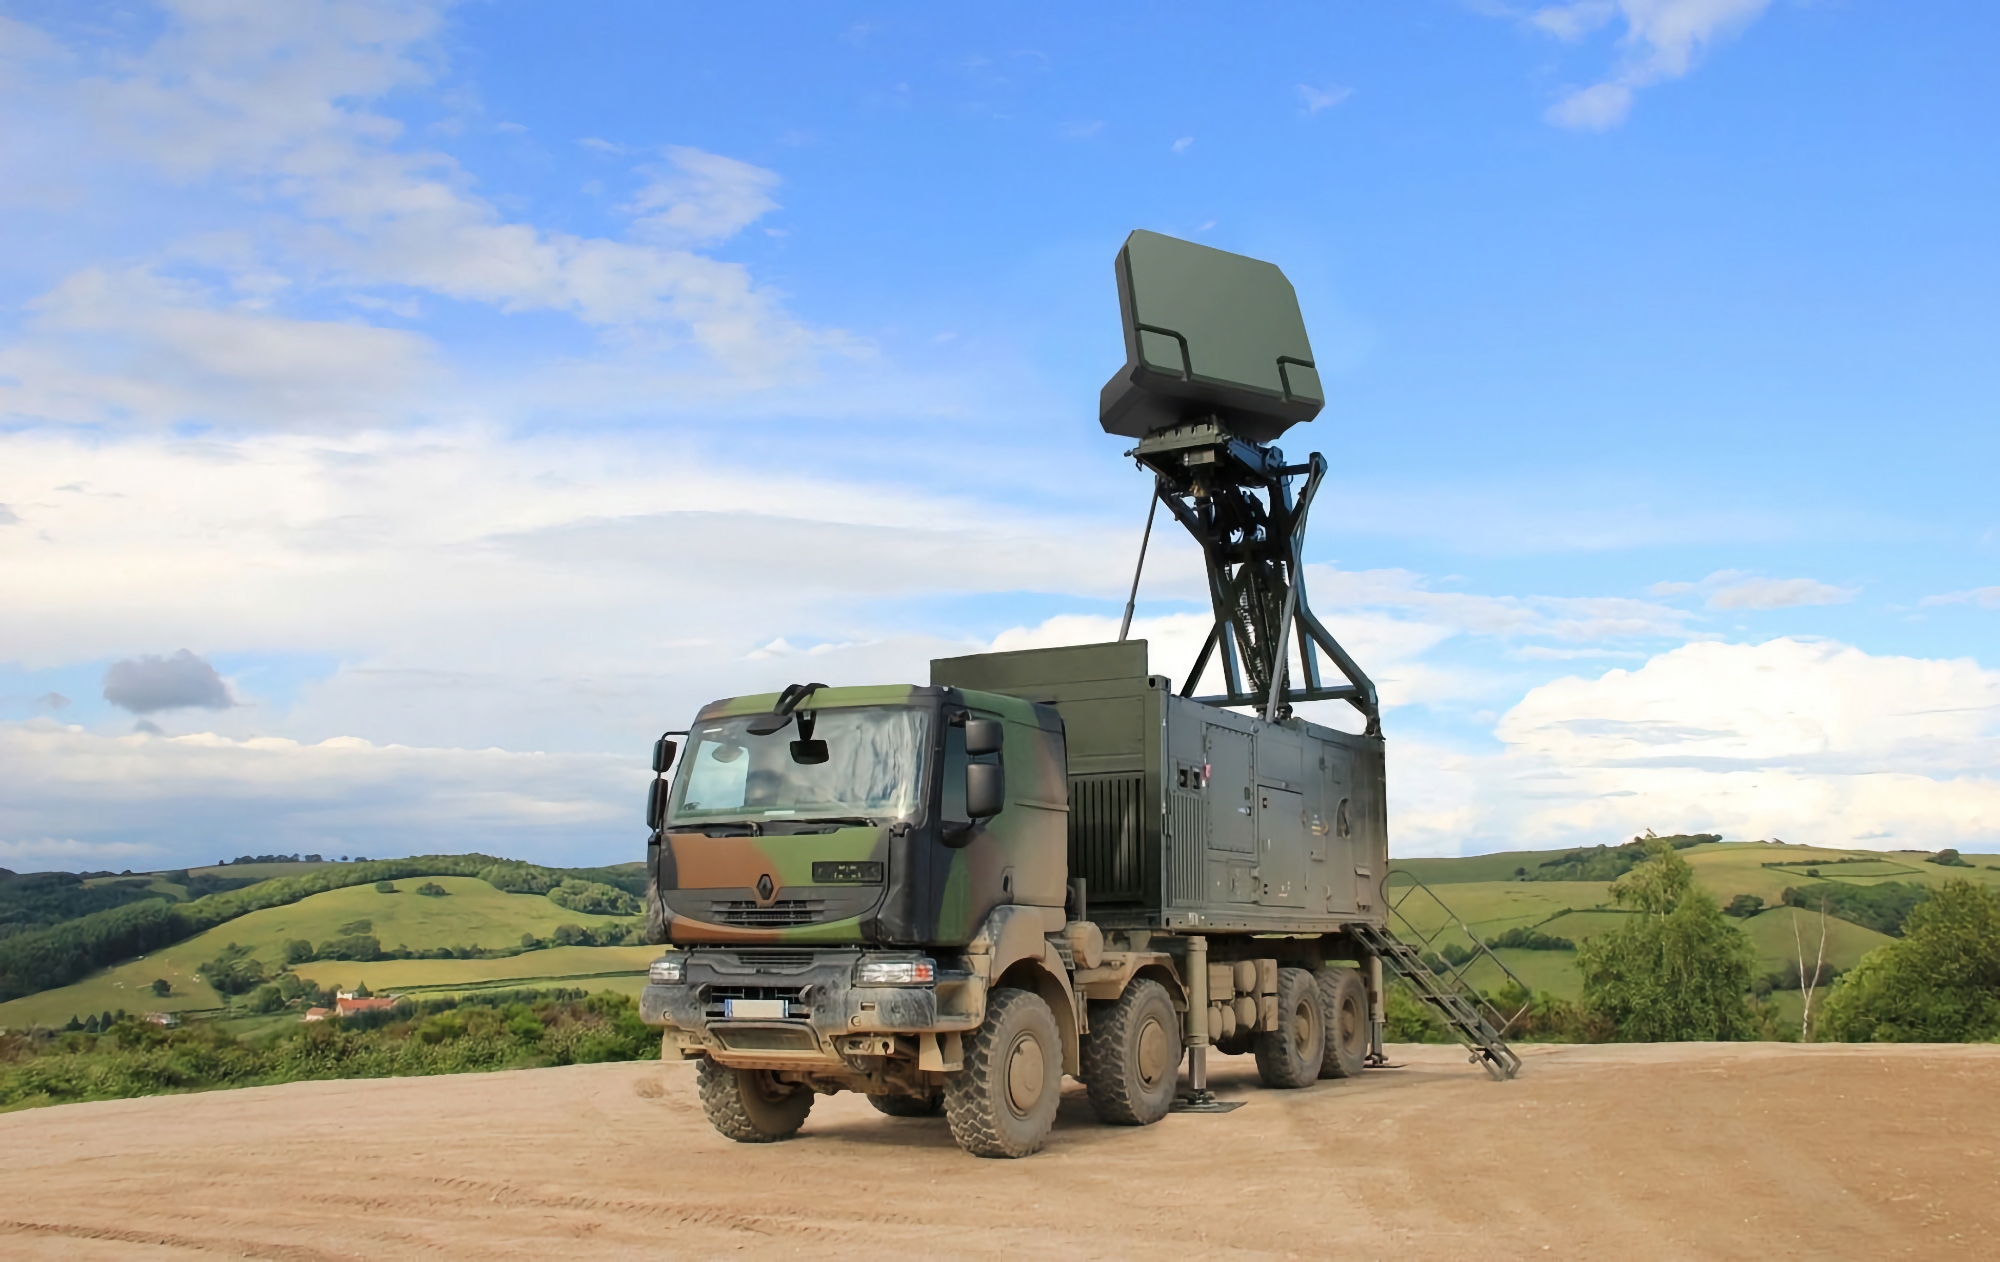 Moldova planlægger at købe franske Ground Master 200-radarer, der kan opdage luft-, land- og sømål på en afstand af op til 250 kilometer.